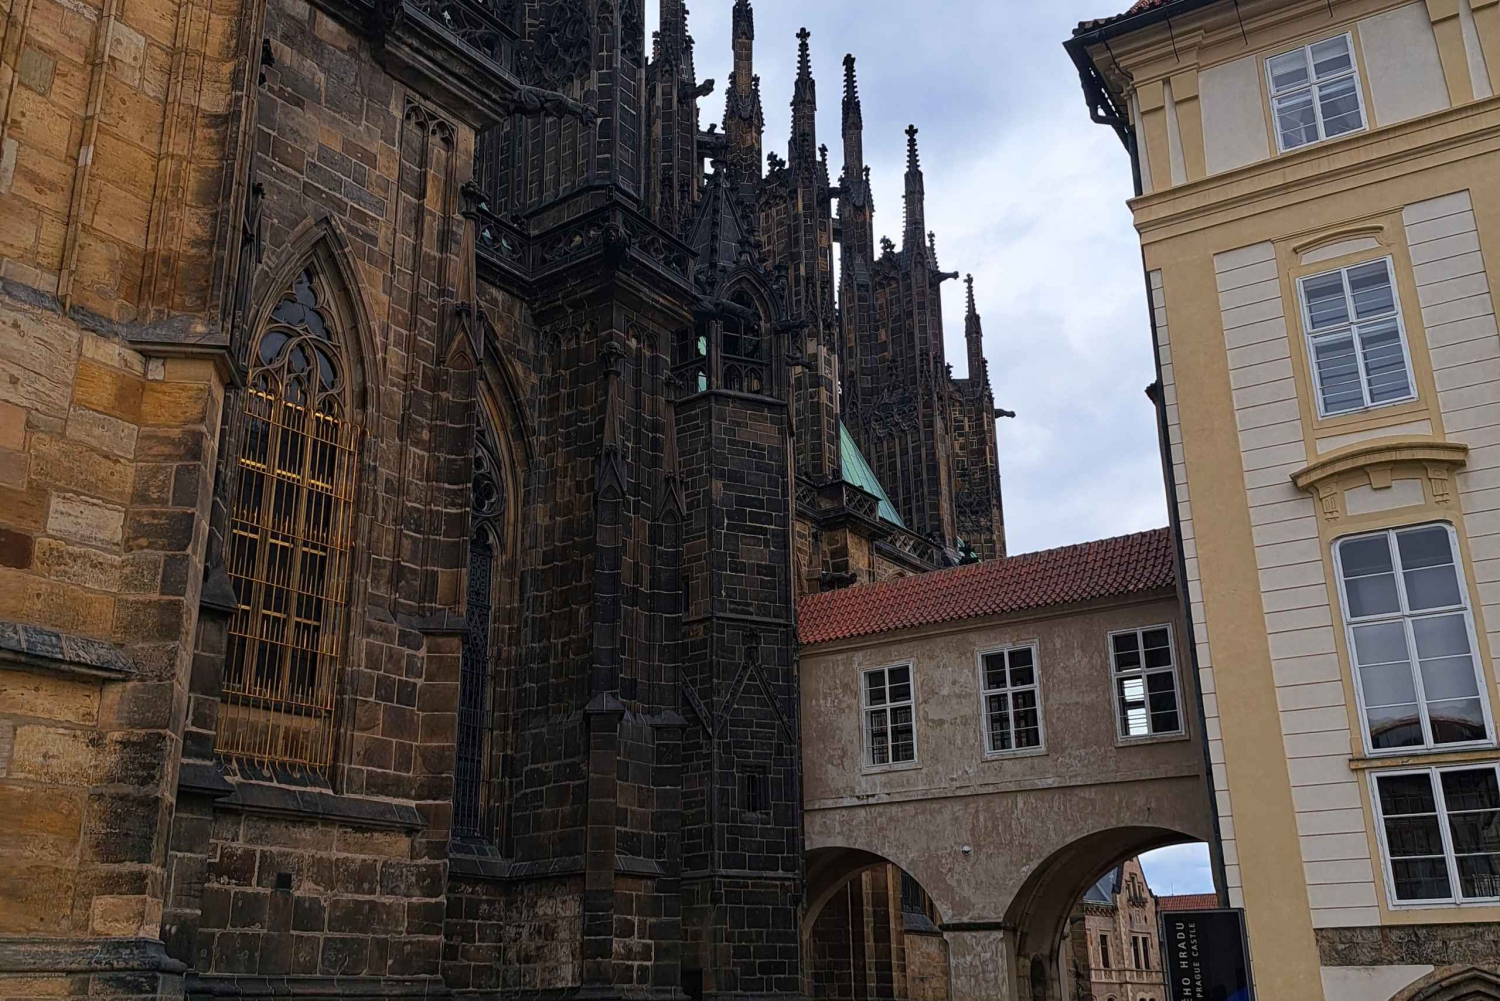 Castillo de Praga e Interiores, con entrada